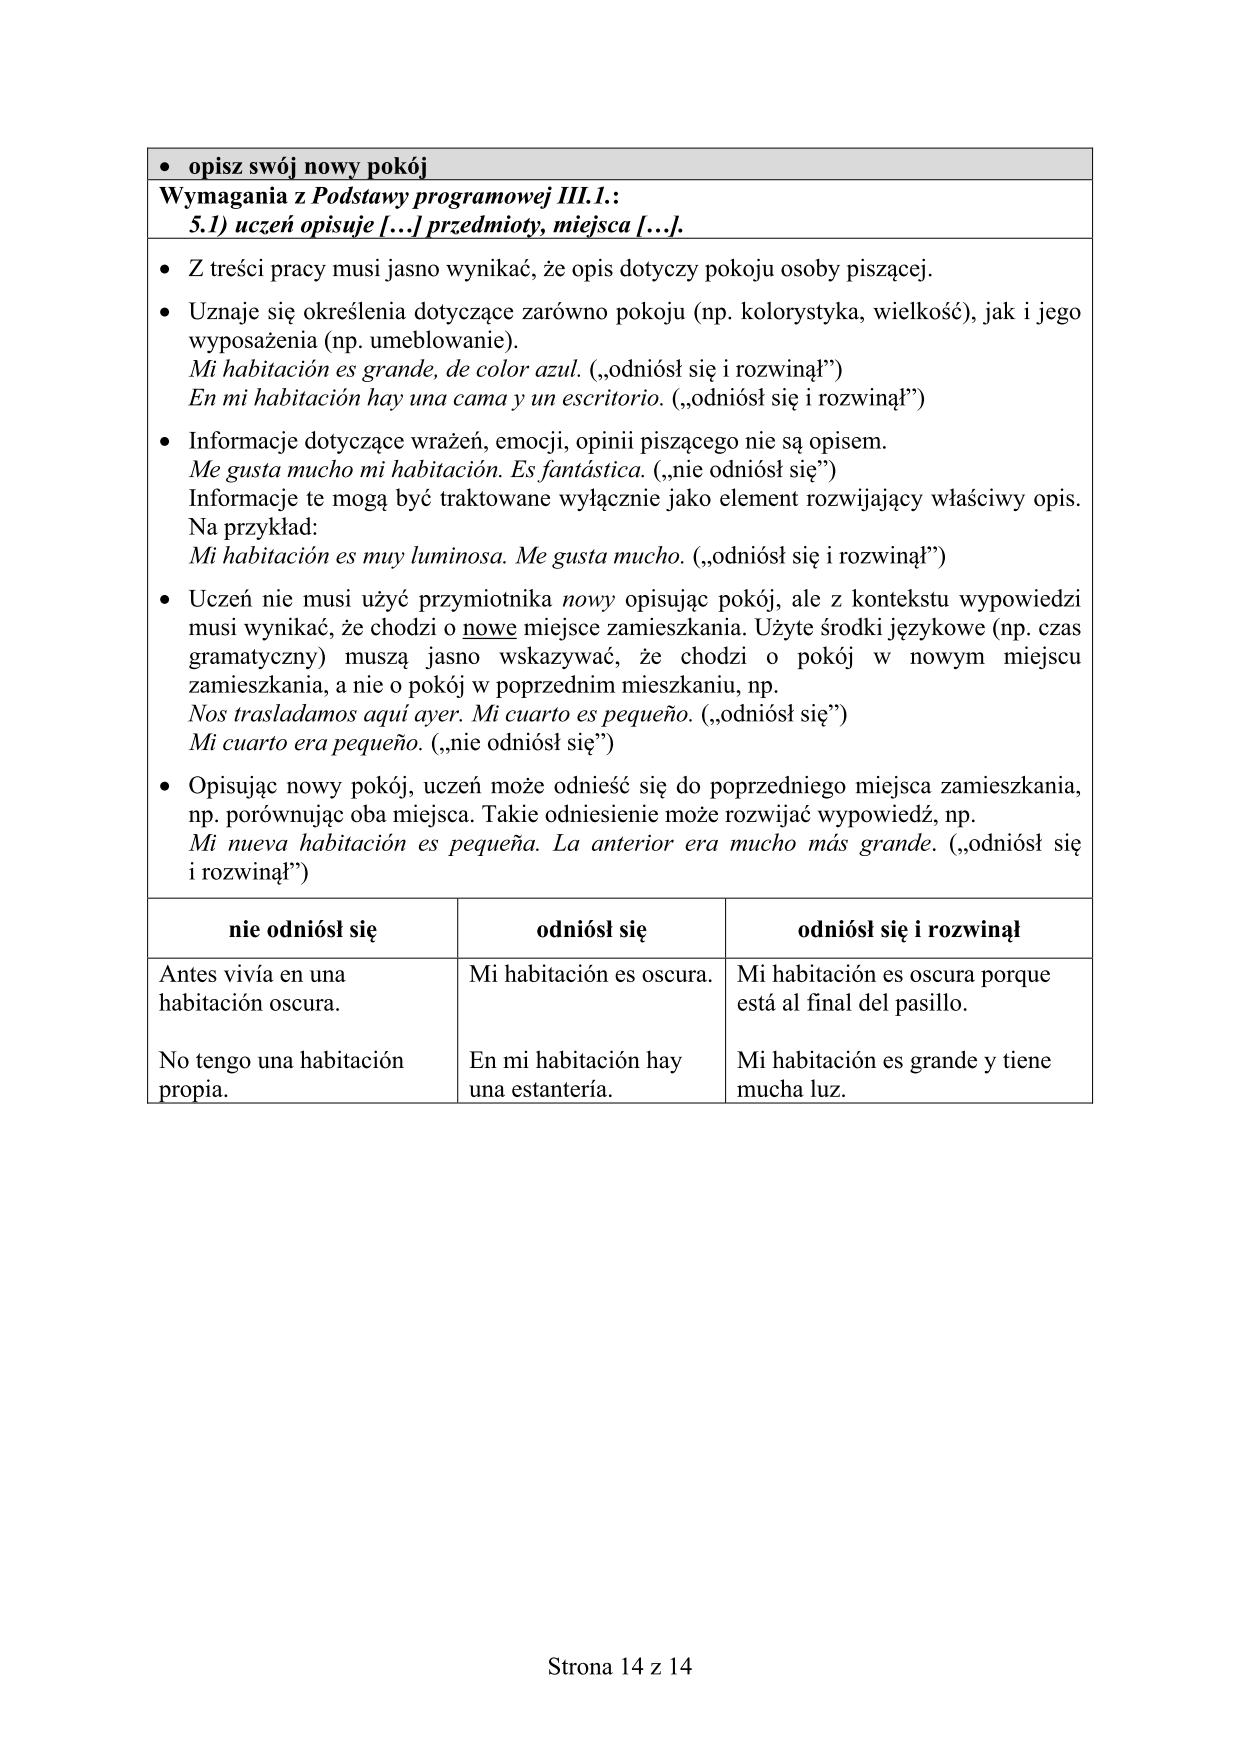 odpowiedzi-hiszpanski-poziom-rozszerzony-egzamin-gimnazjalny-2016-14